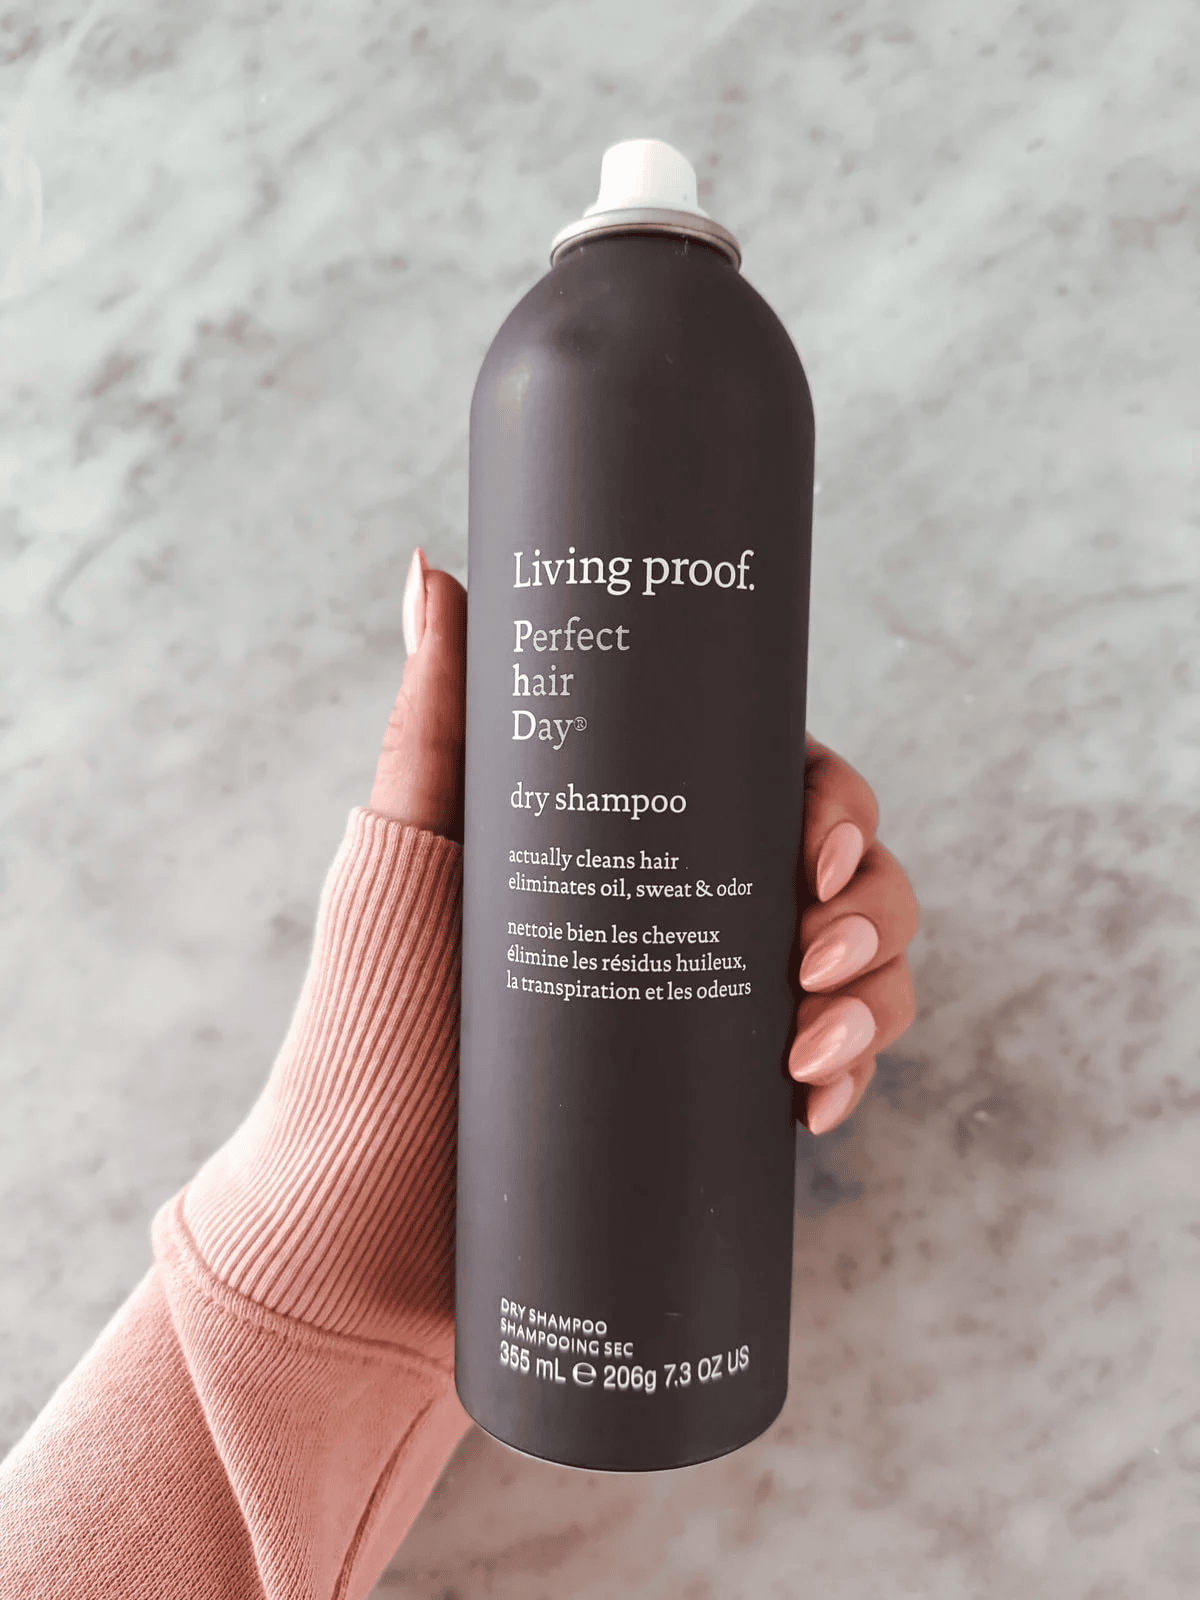 living proof dry shampoo on sale